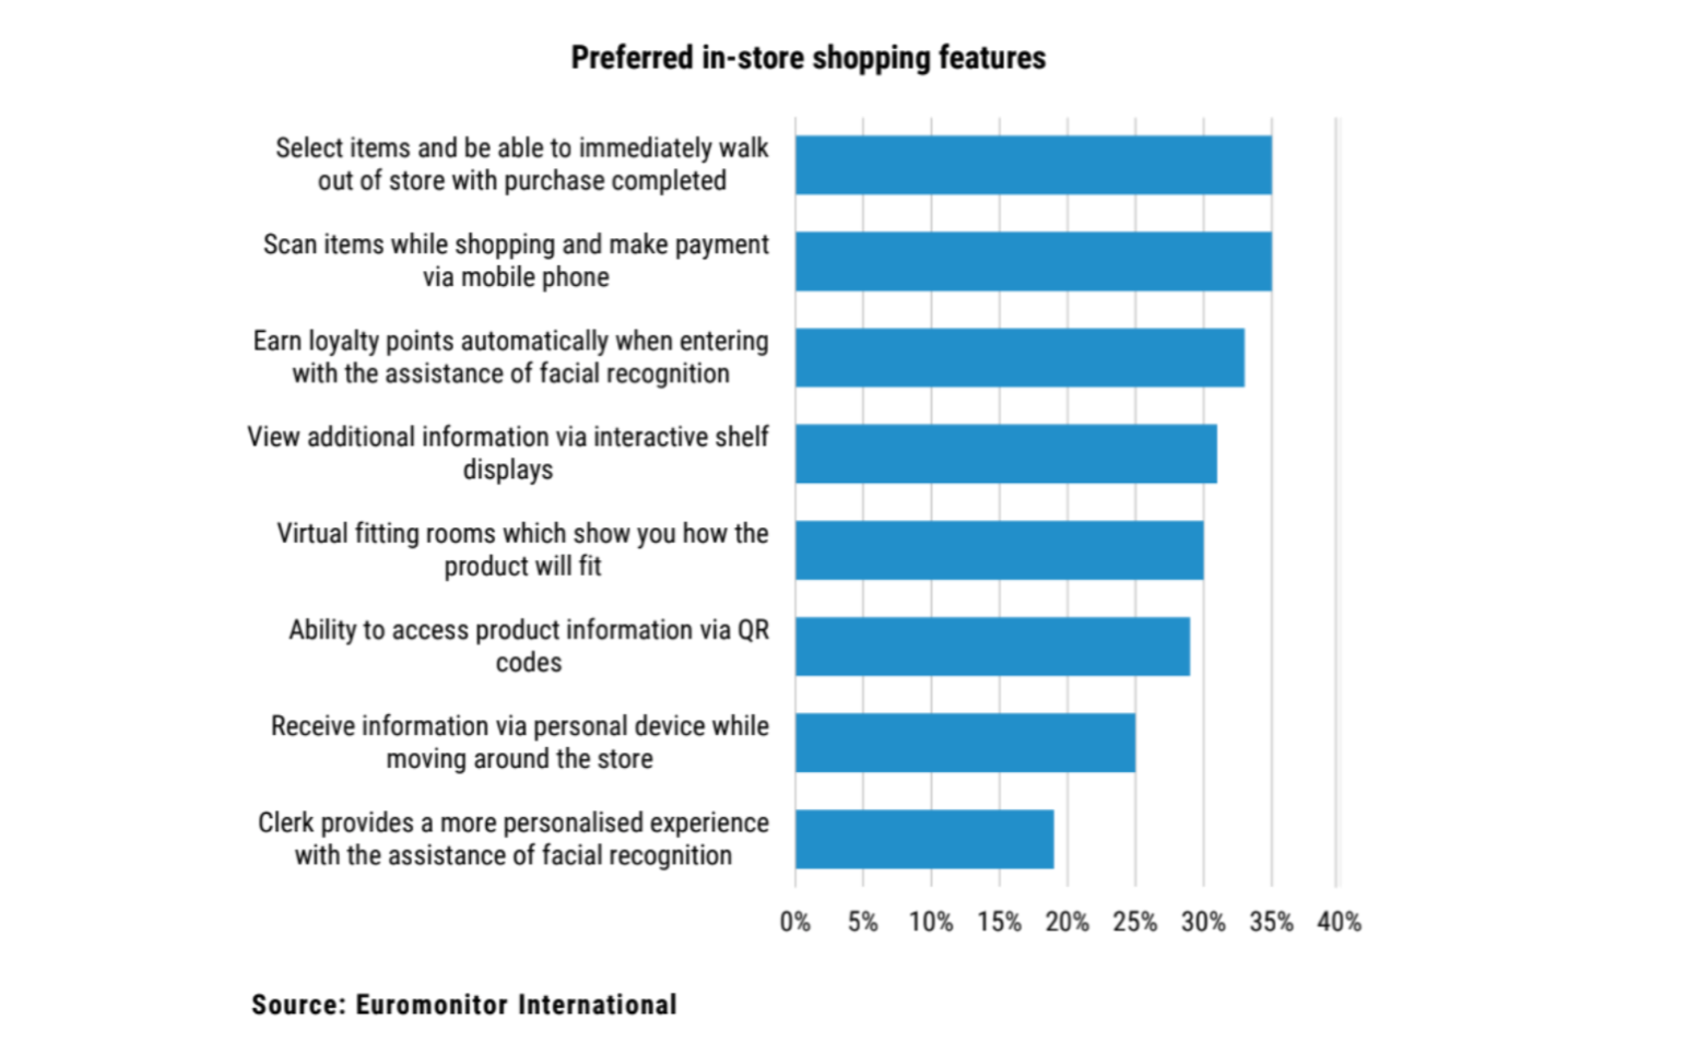 Grafico che mostra le caratteristiche preferite per gli acquisti in negozio.